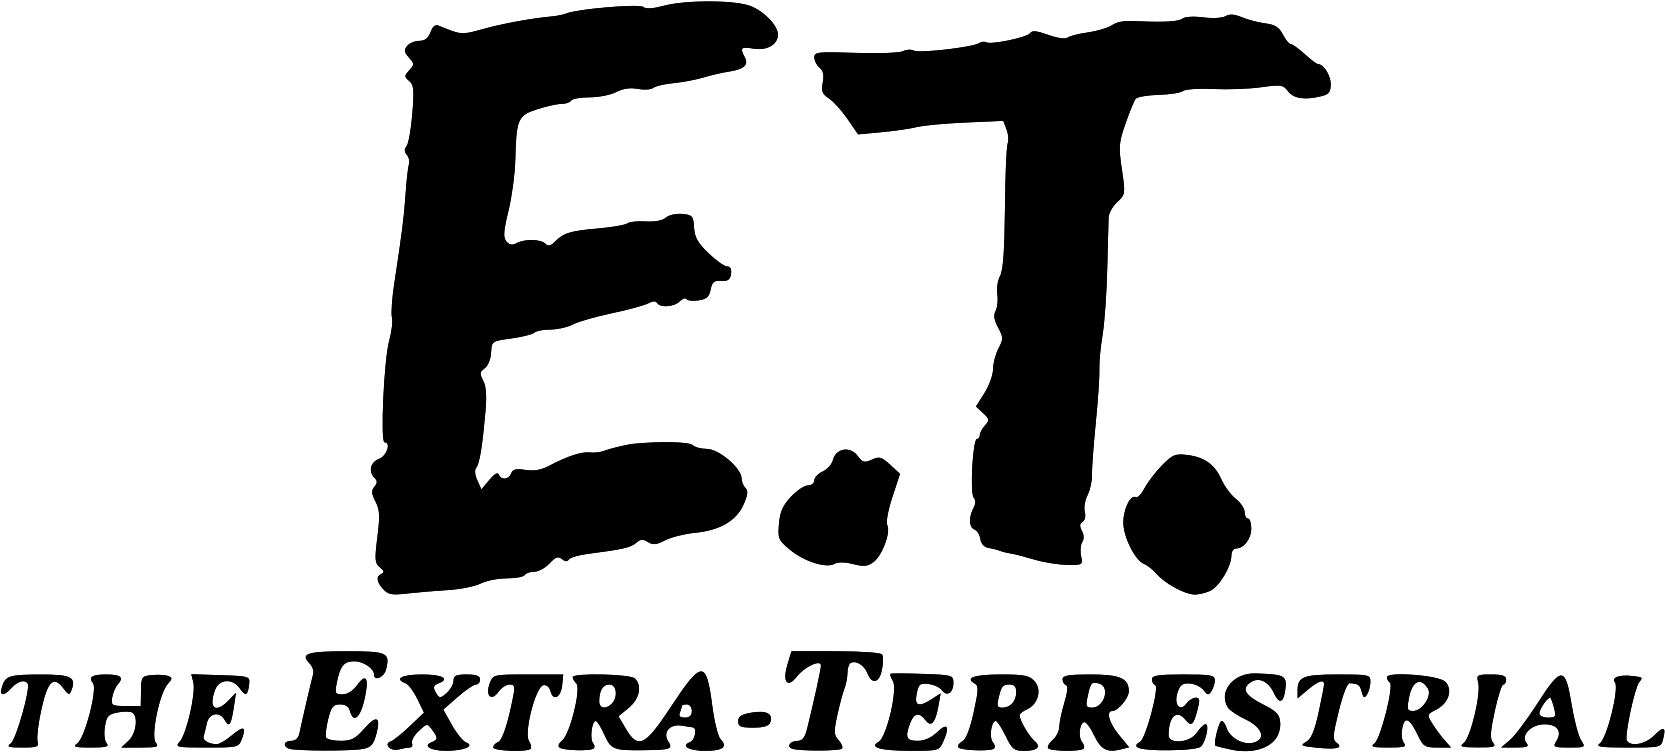 The extra years are. The Extra Terrestrial логотип. Et логотип. Et буквы. N.E.E.T логотип.